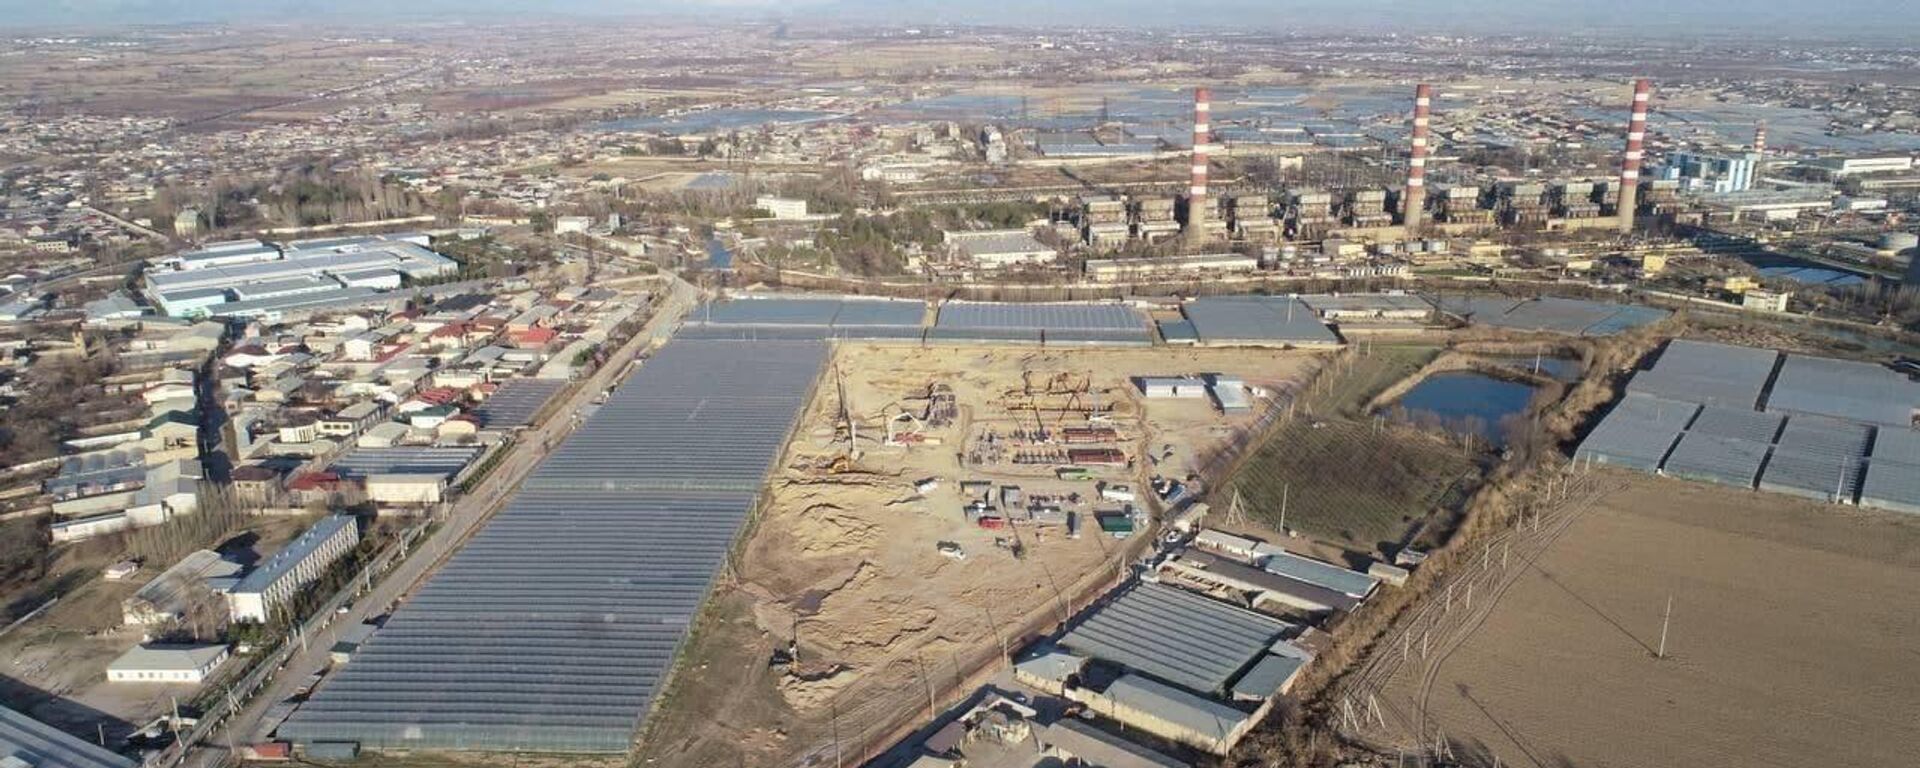 Турецкая компания Aksa Enerji строит в Ташкентской области две ТЭС общей мощностью 470 МВт - Sputnik Ўзбекистон, 1920, 01.04.2021